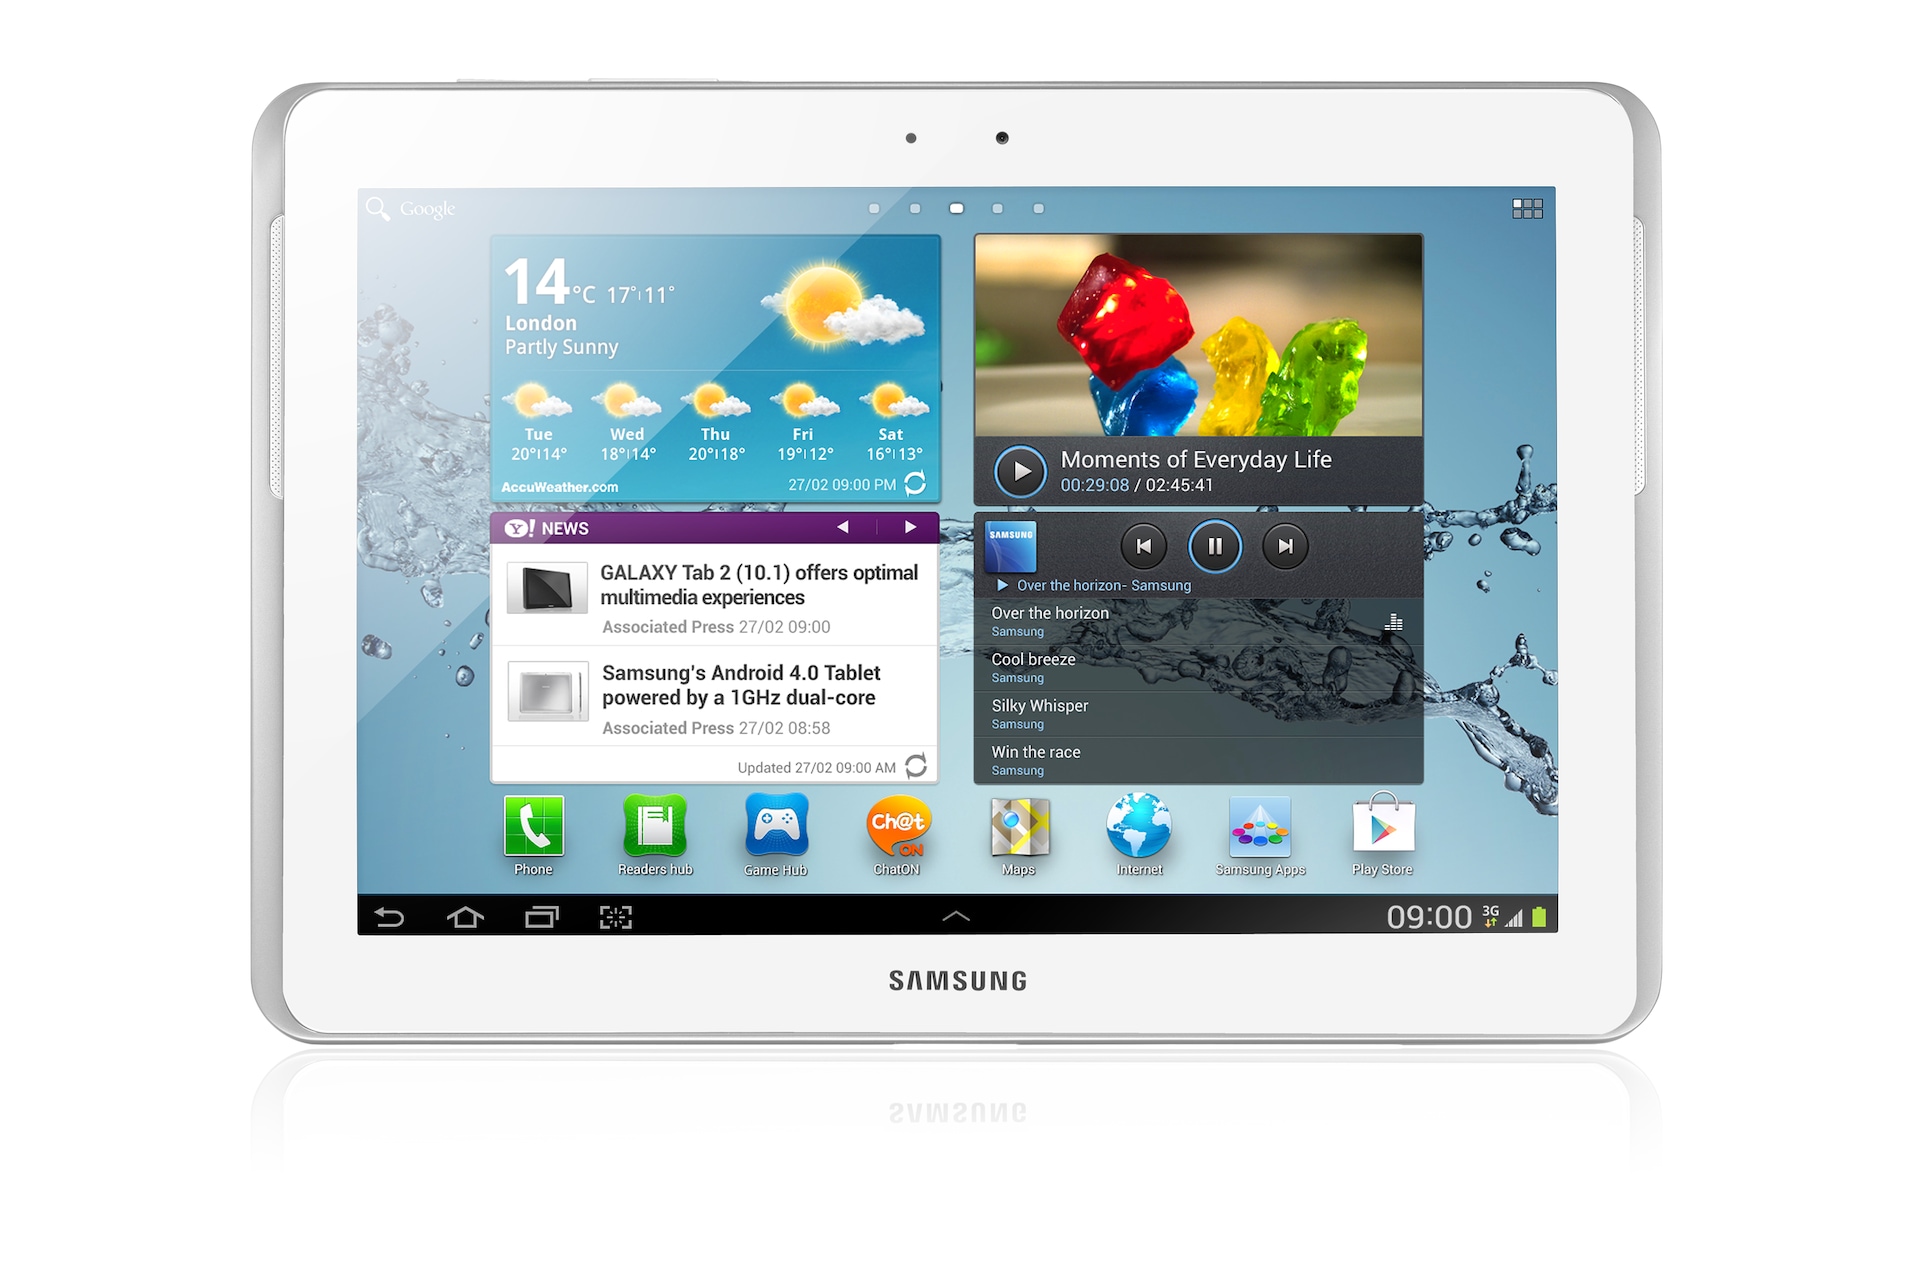 Heerlijk vacuüm opgraven Samsung Galaxy Tab 2 10.1-inch - 3G - 1GHz - Android 4.0 | Samsung IE